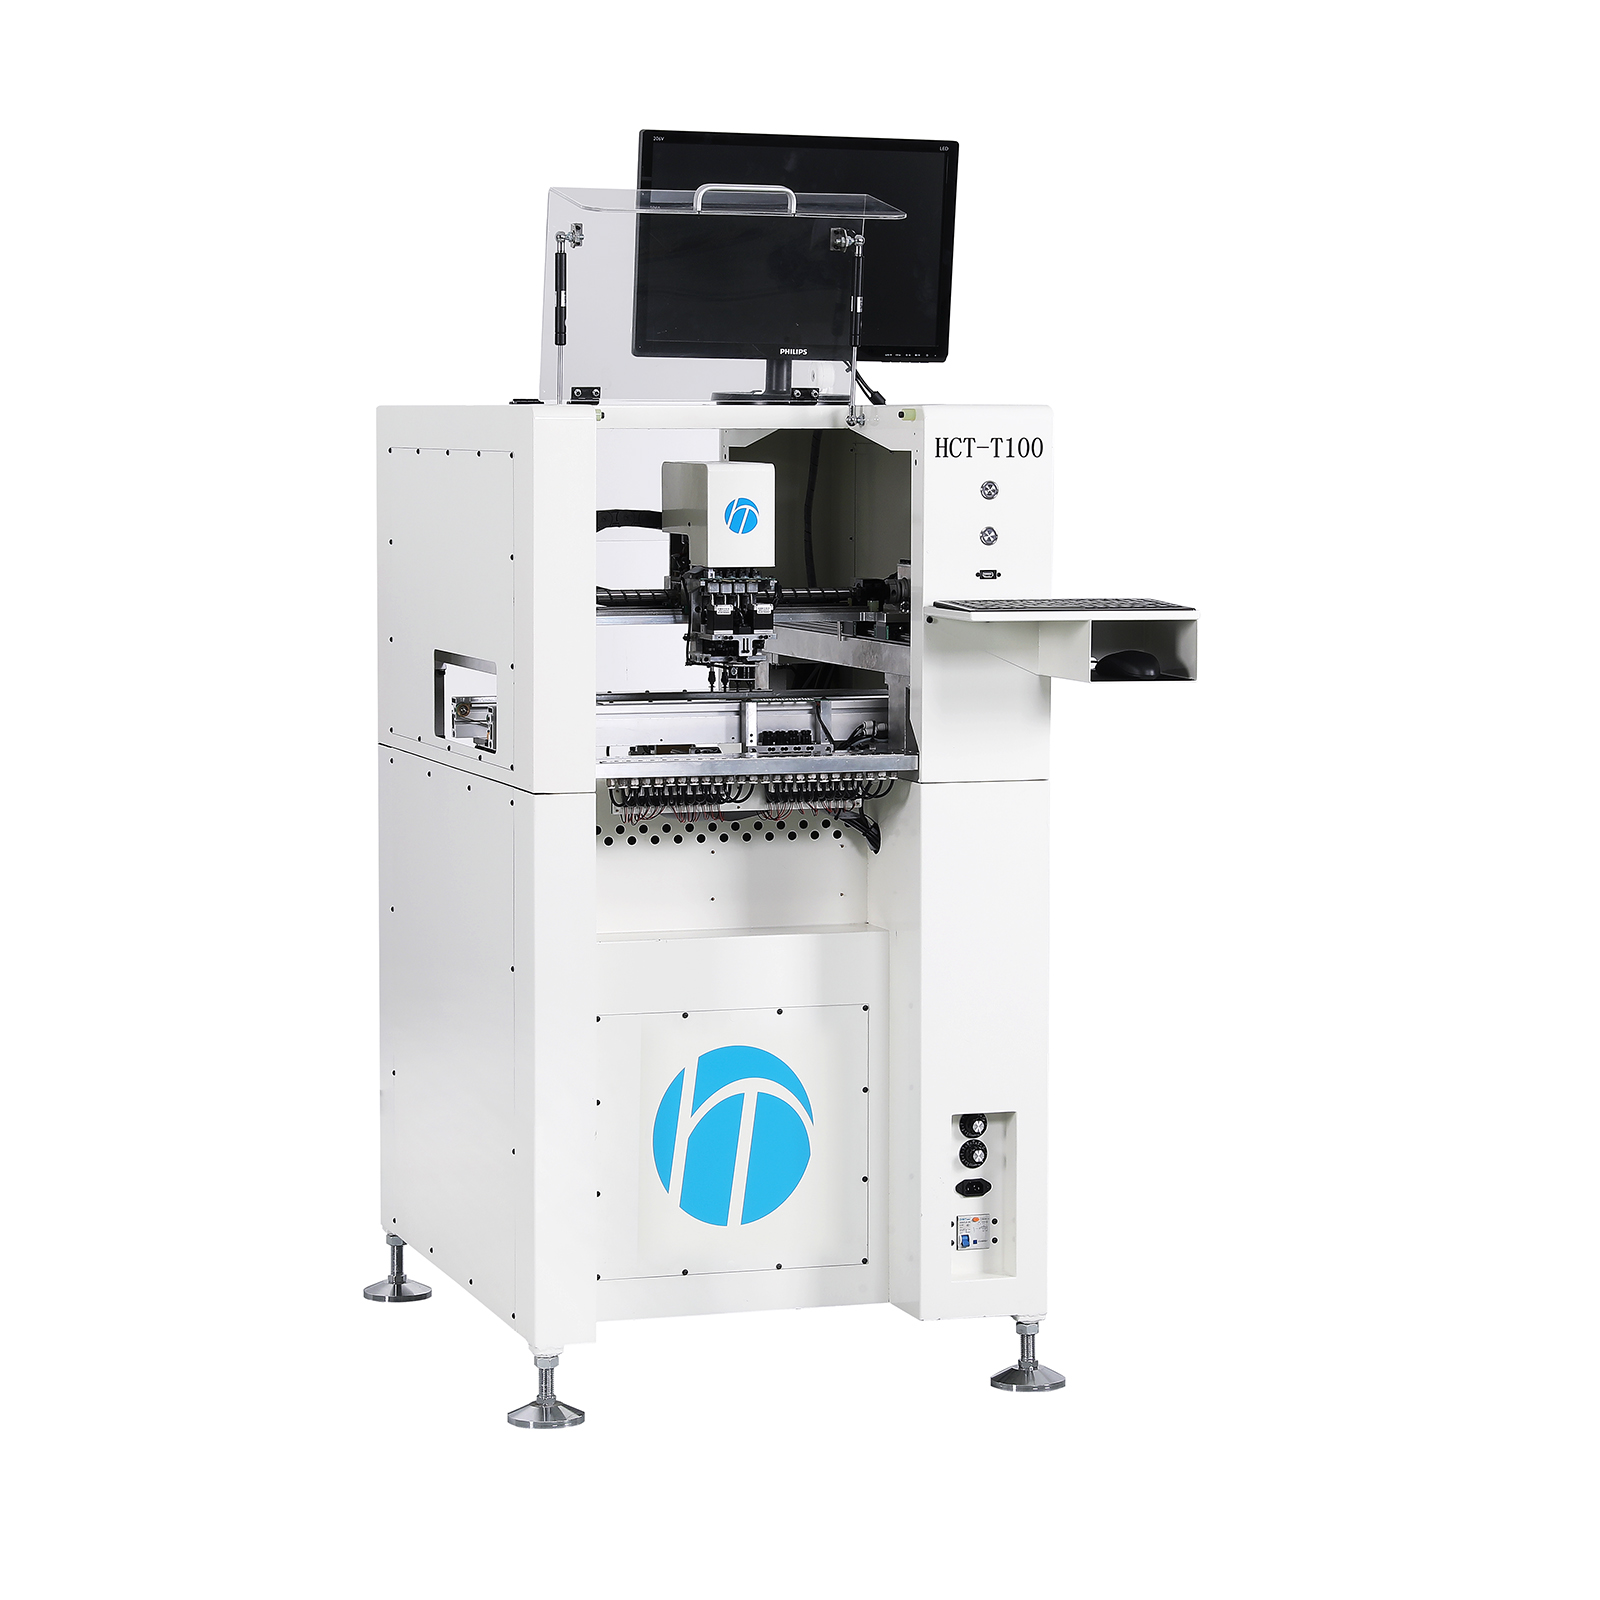 HCT-T100 series SMT machine